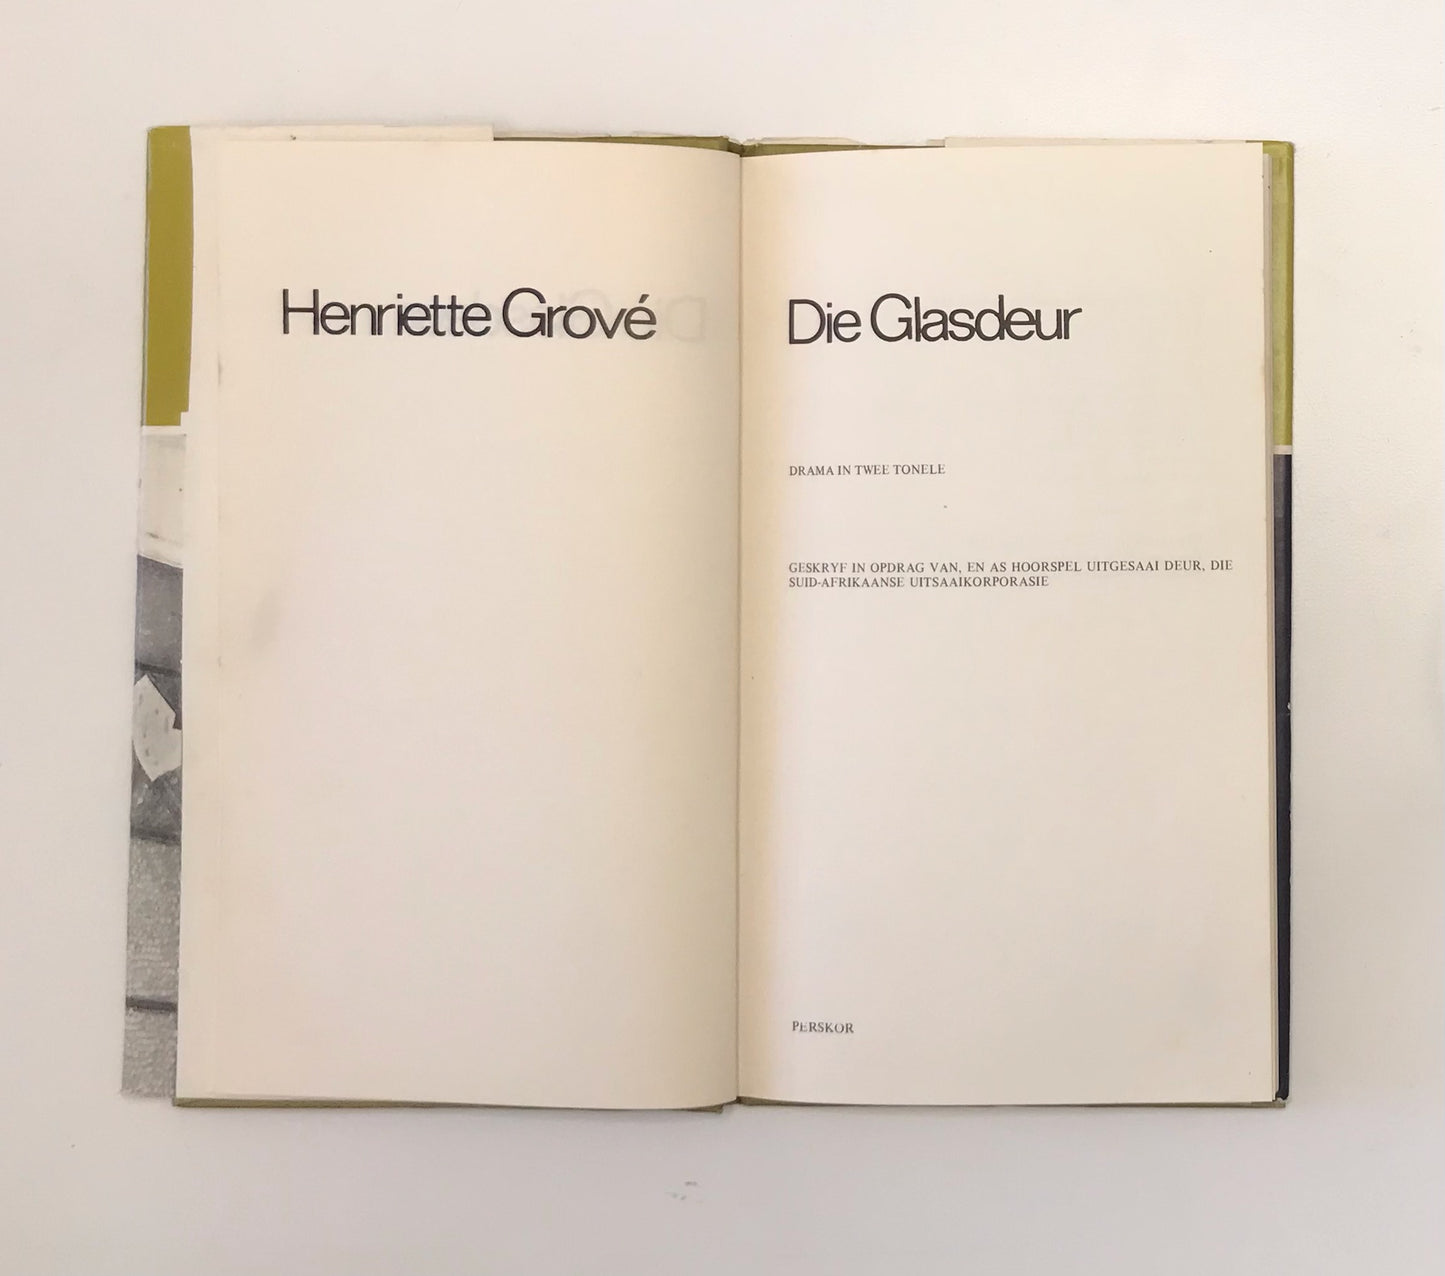 Die glasdeur - Henriette Grove